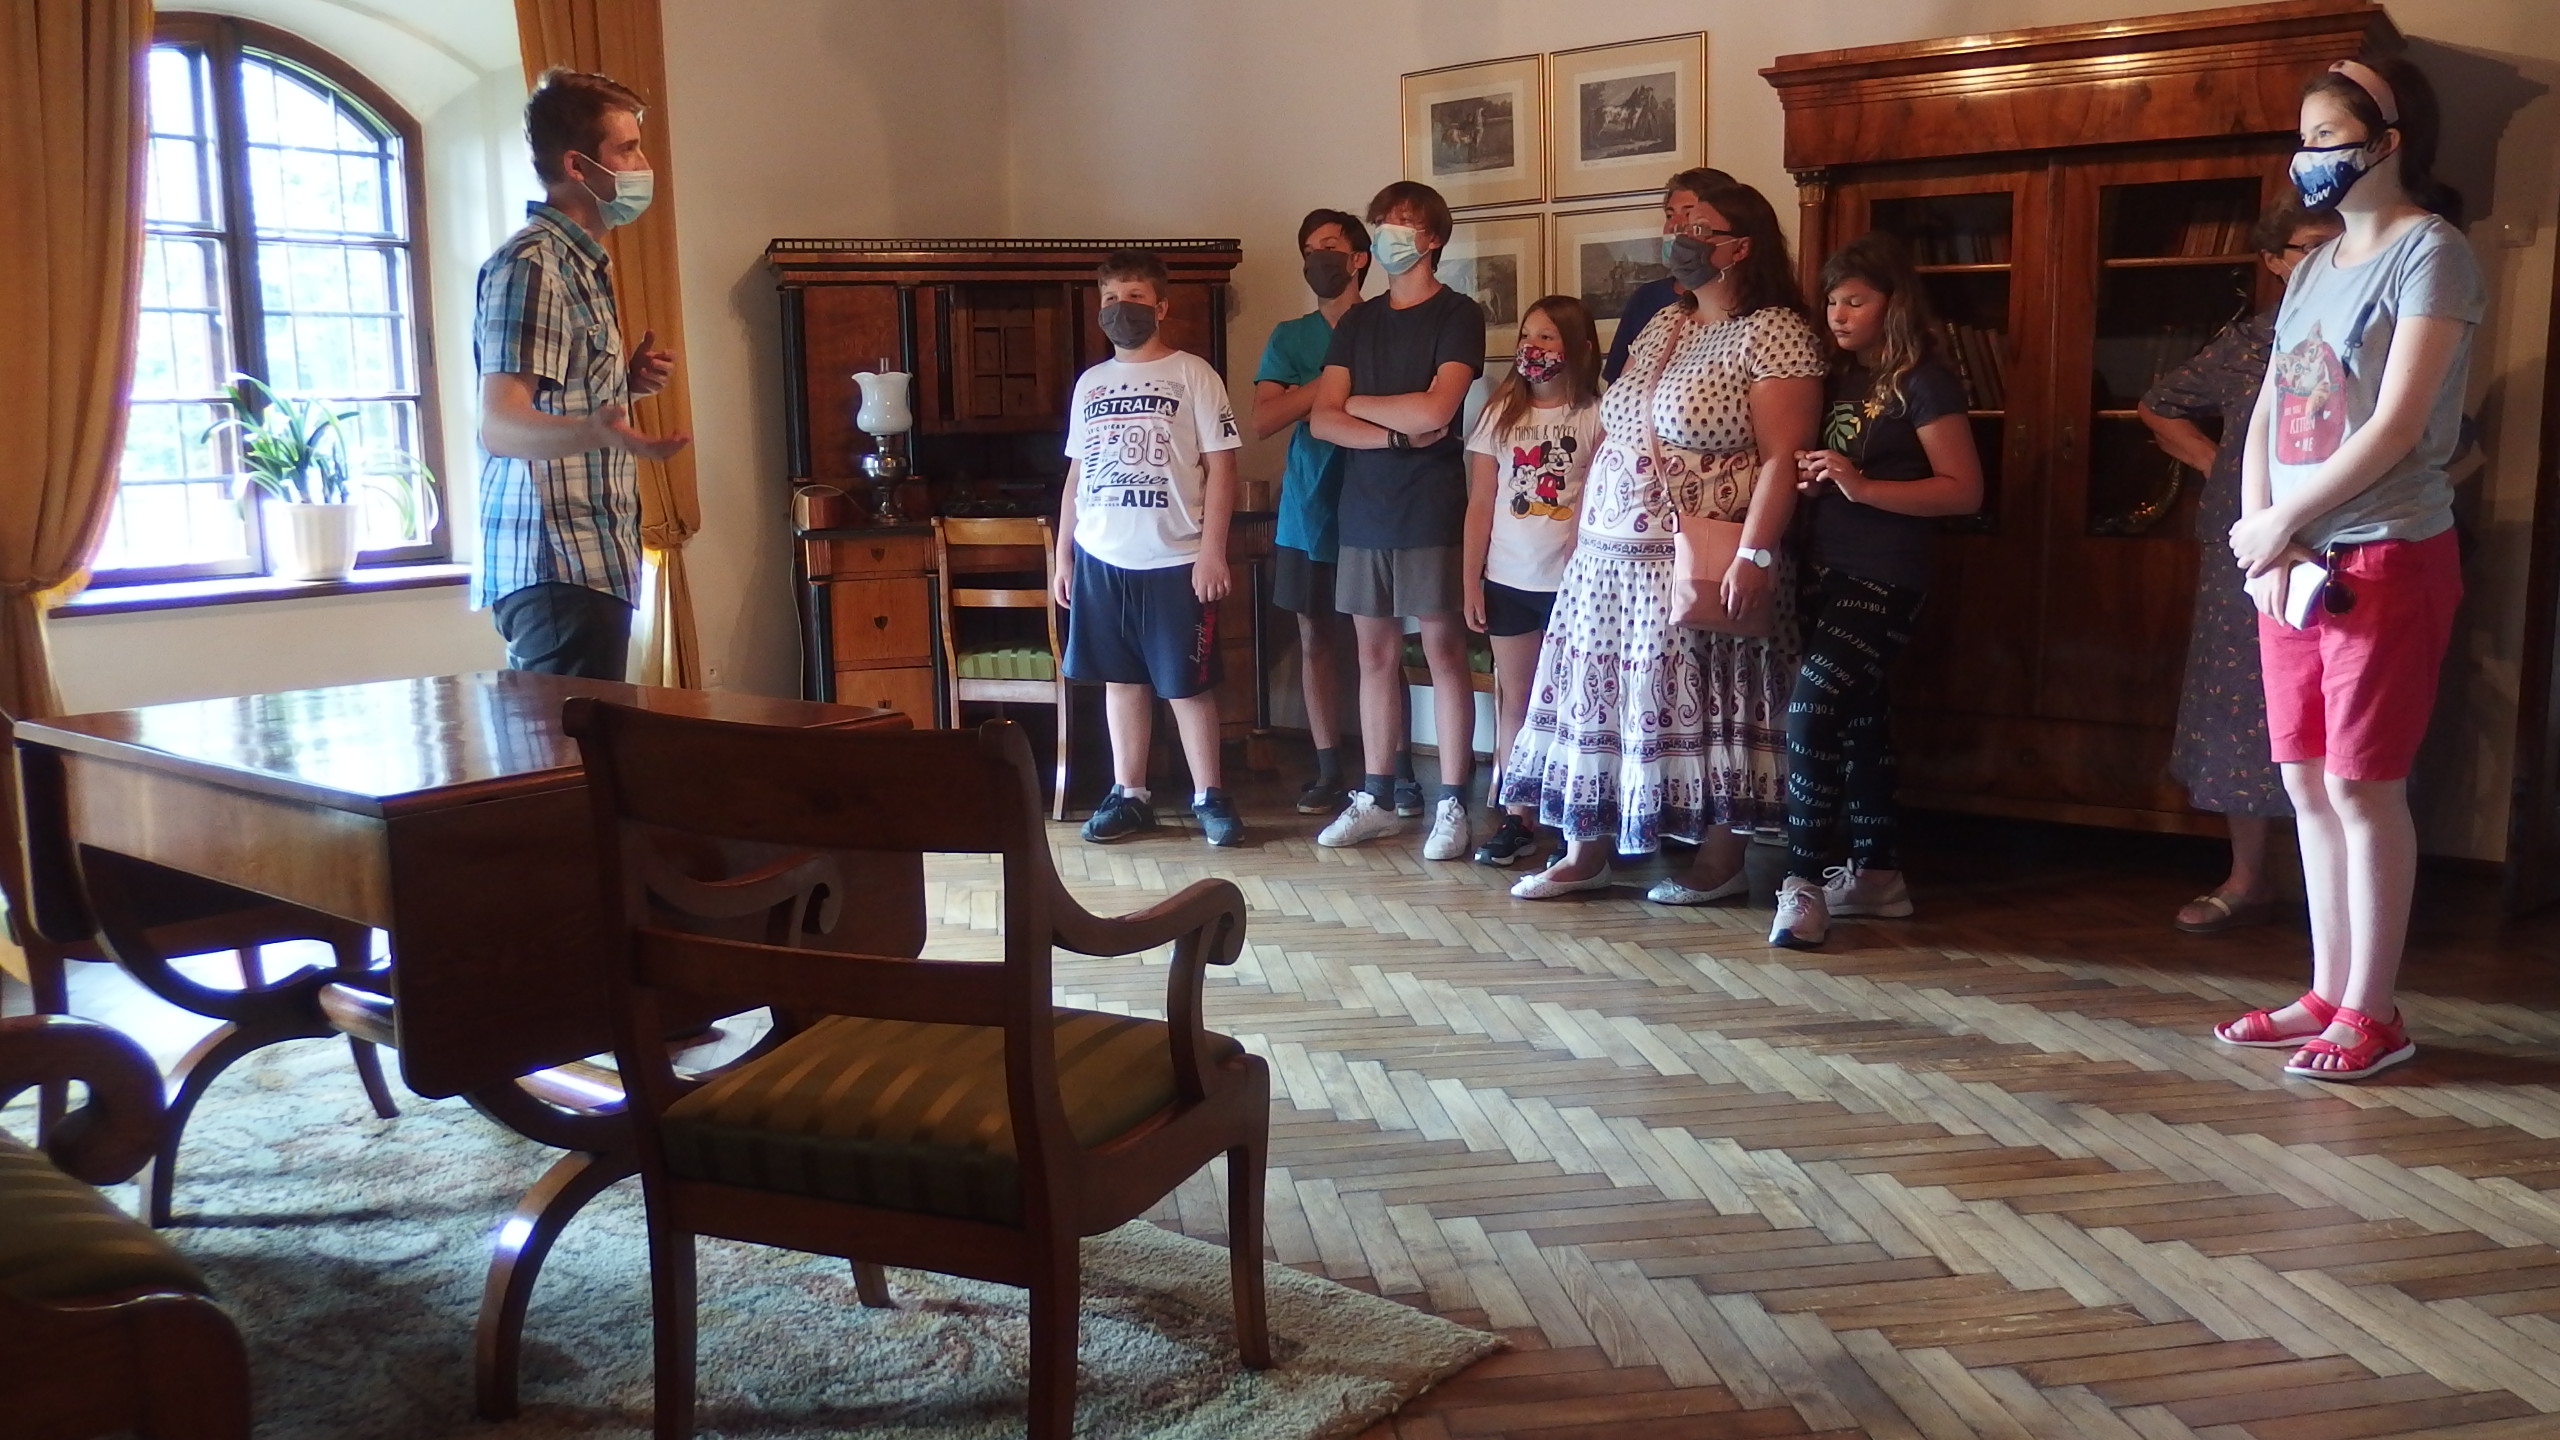 Na zdjęciu znajdują się osoby słuchające wykładu o dziedzicach Dworu Stryszowskiego.